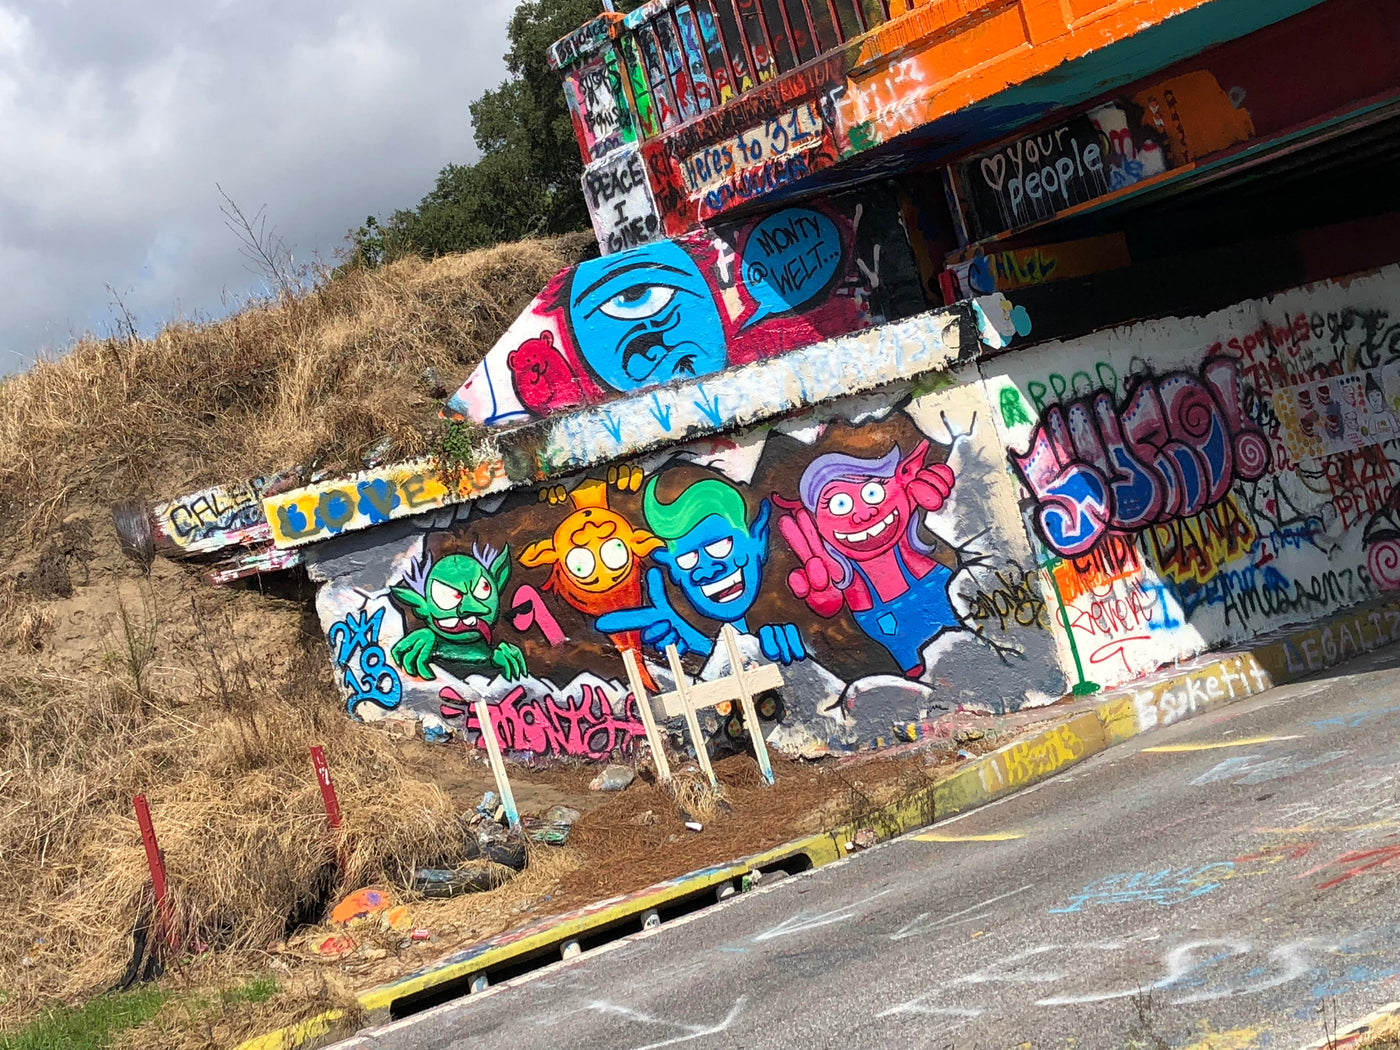 Come one, Come All, Troll Party at The Graffiti Bridge.